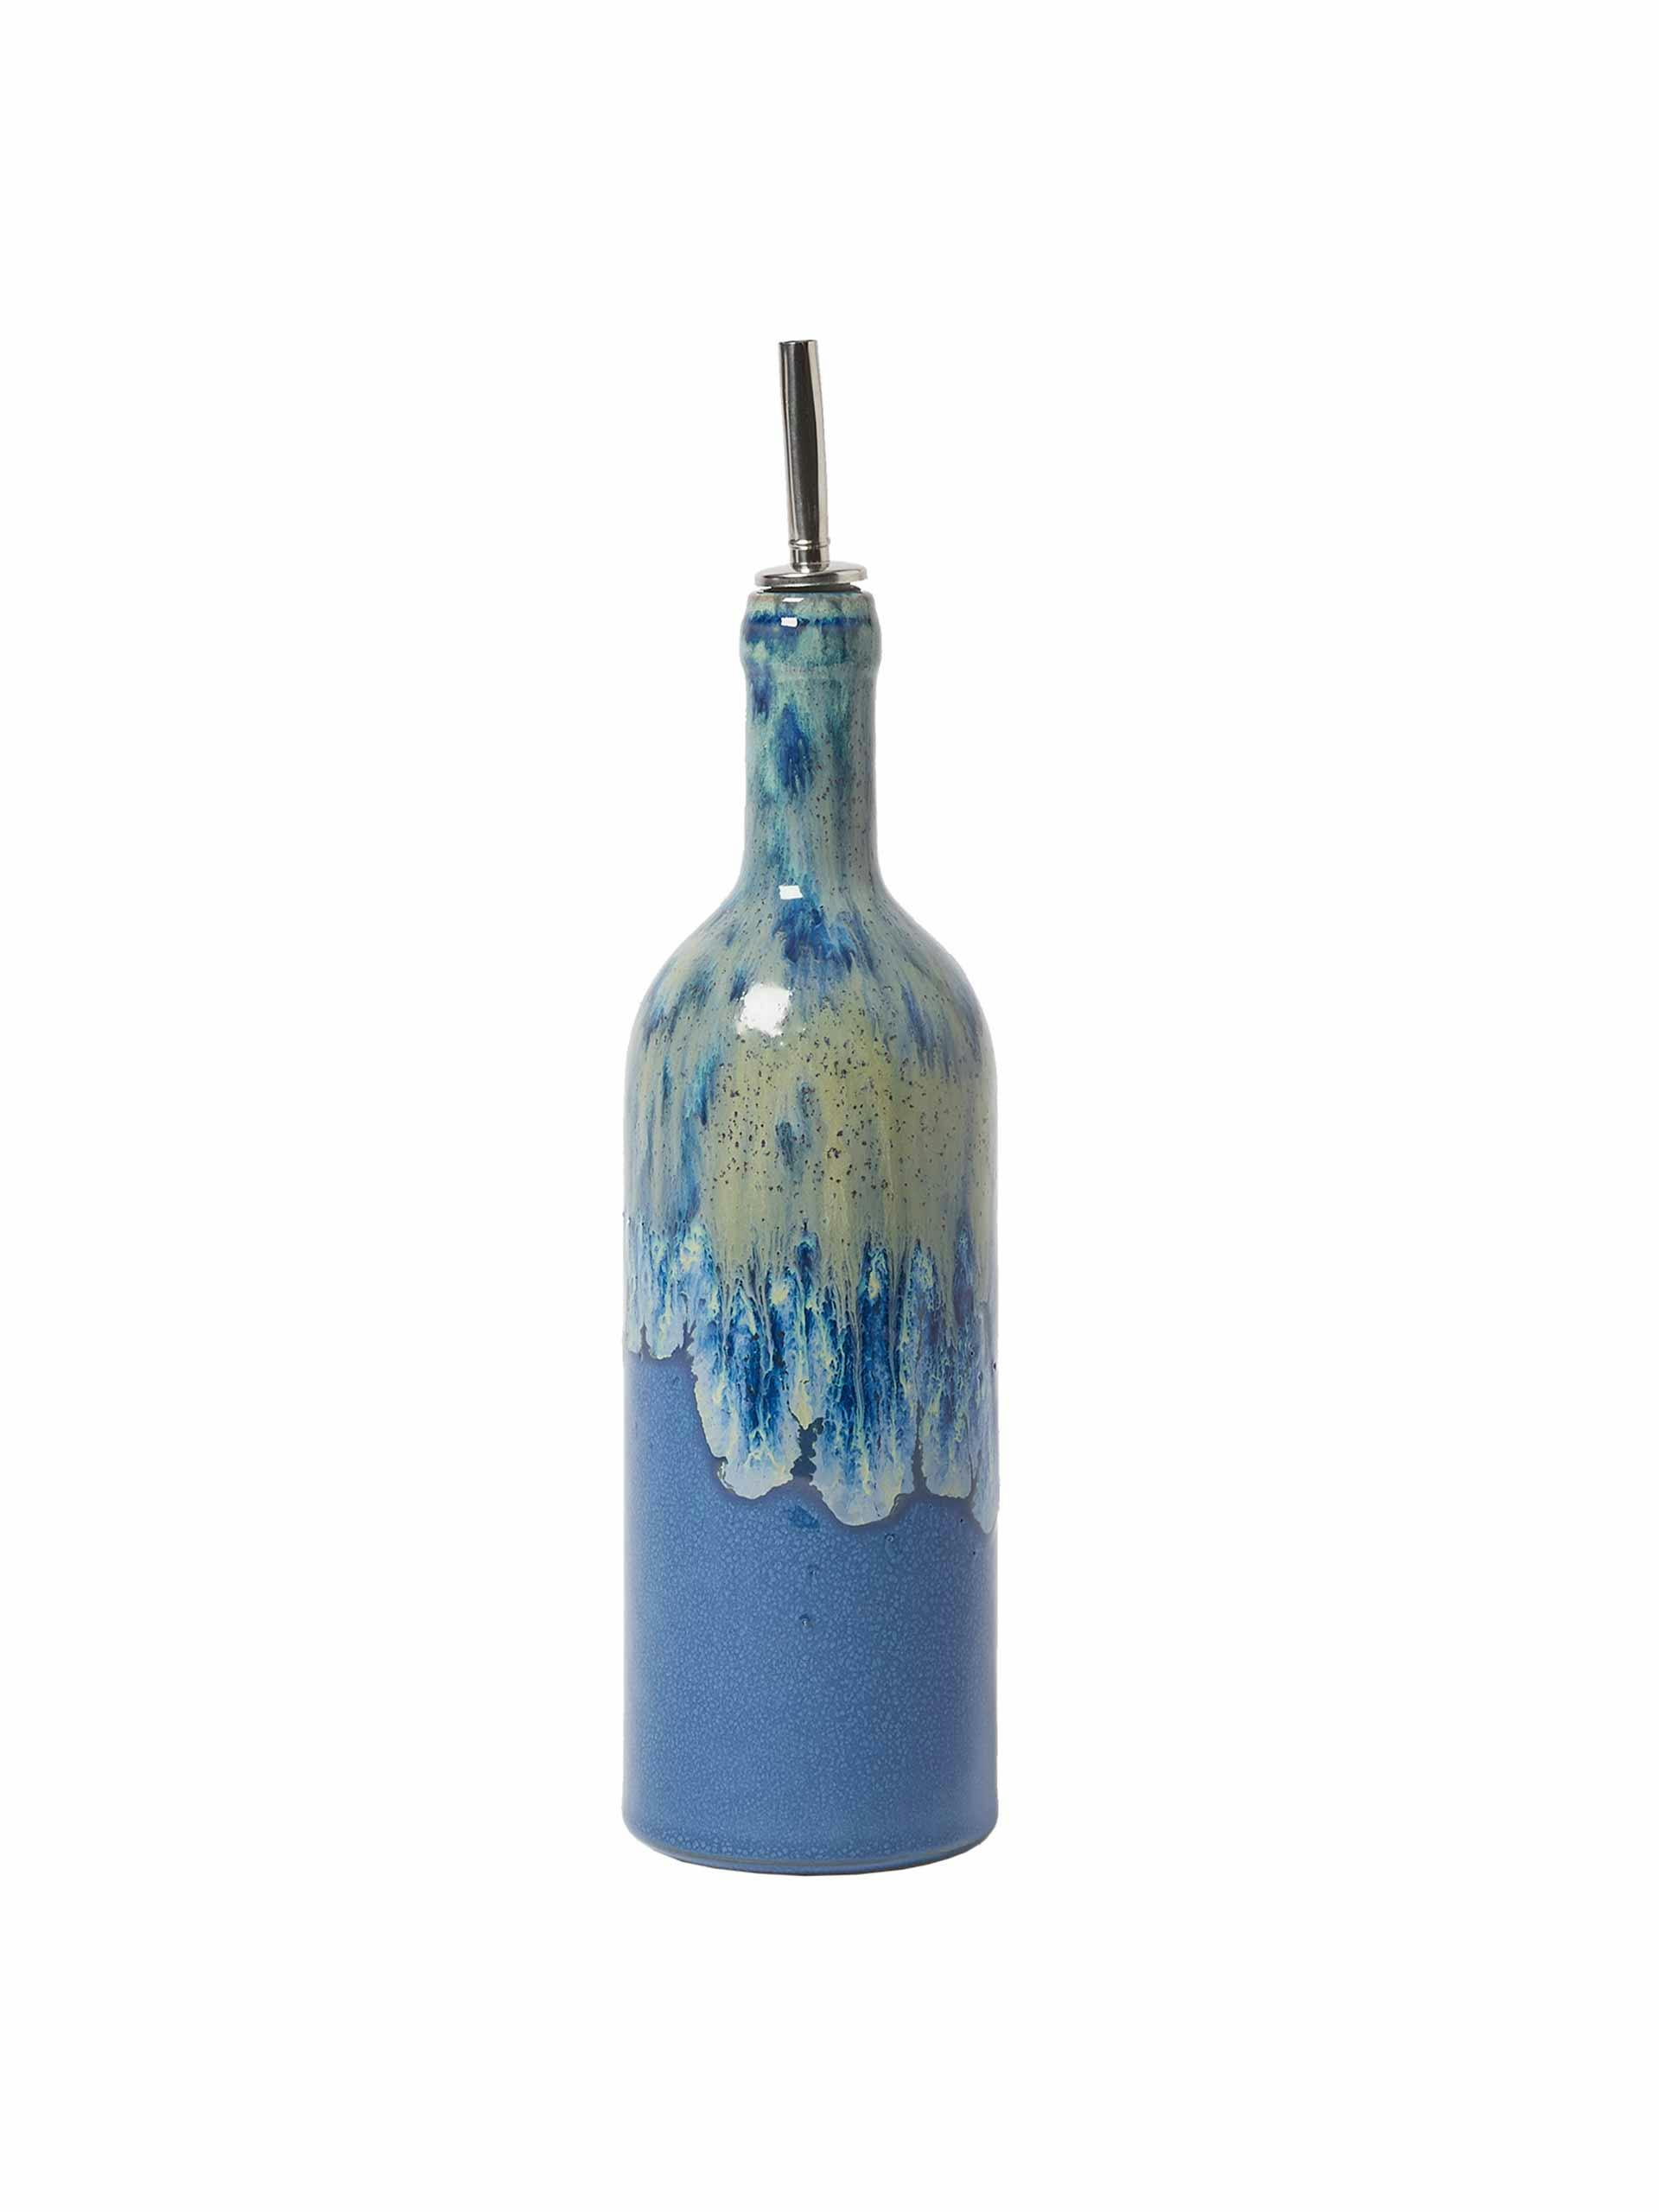 Bete blue ceramic oil bottle